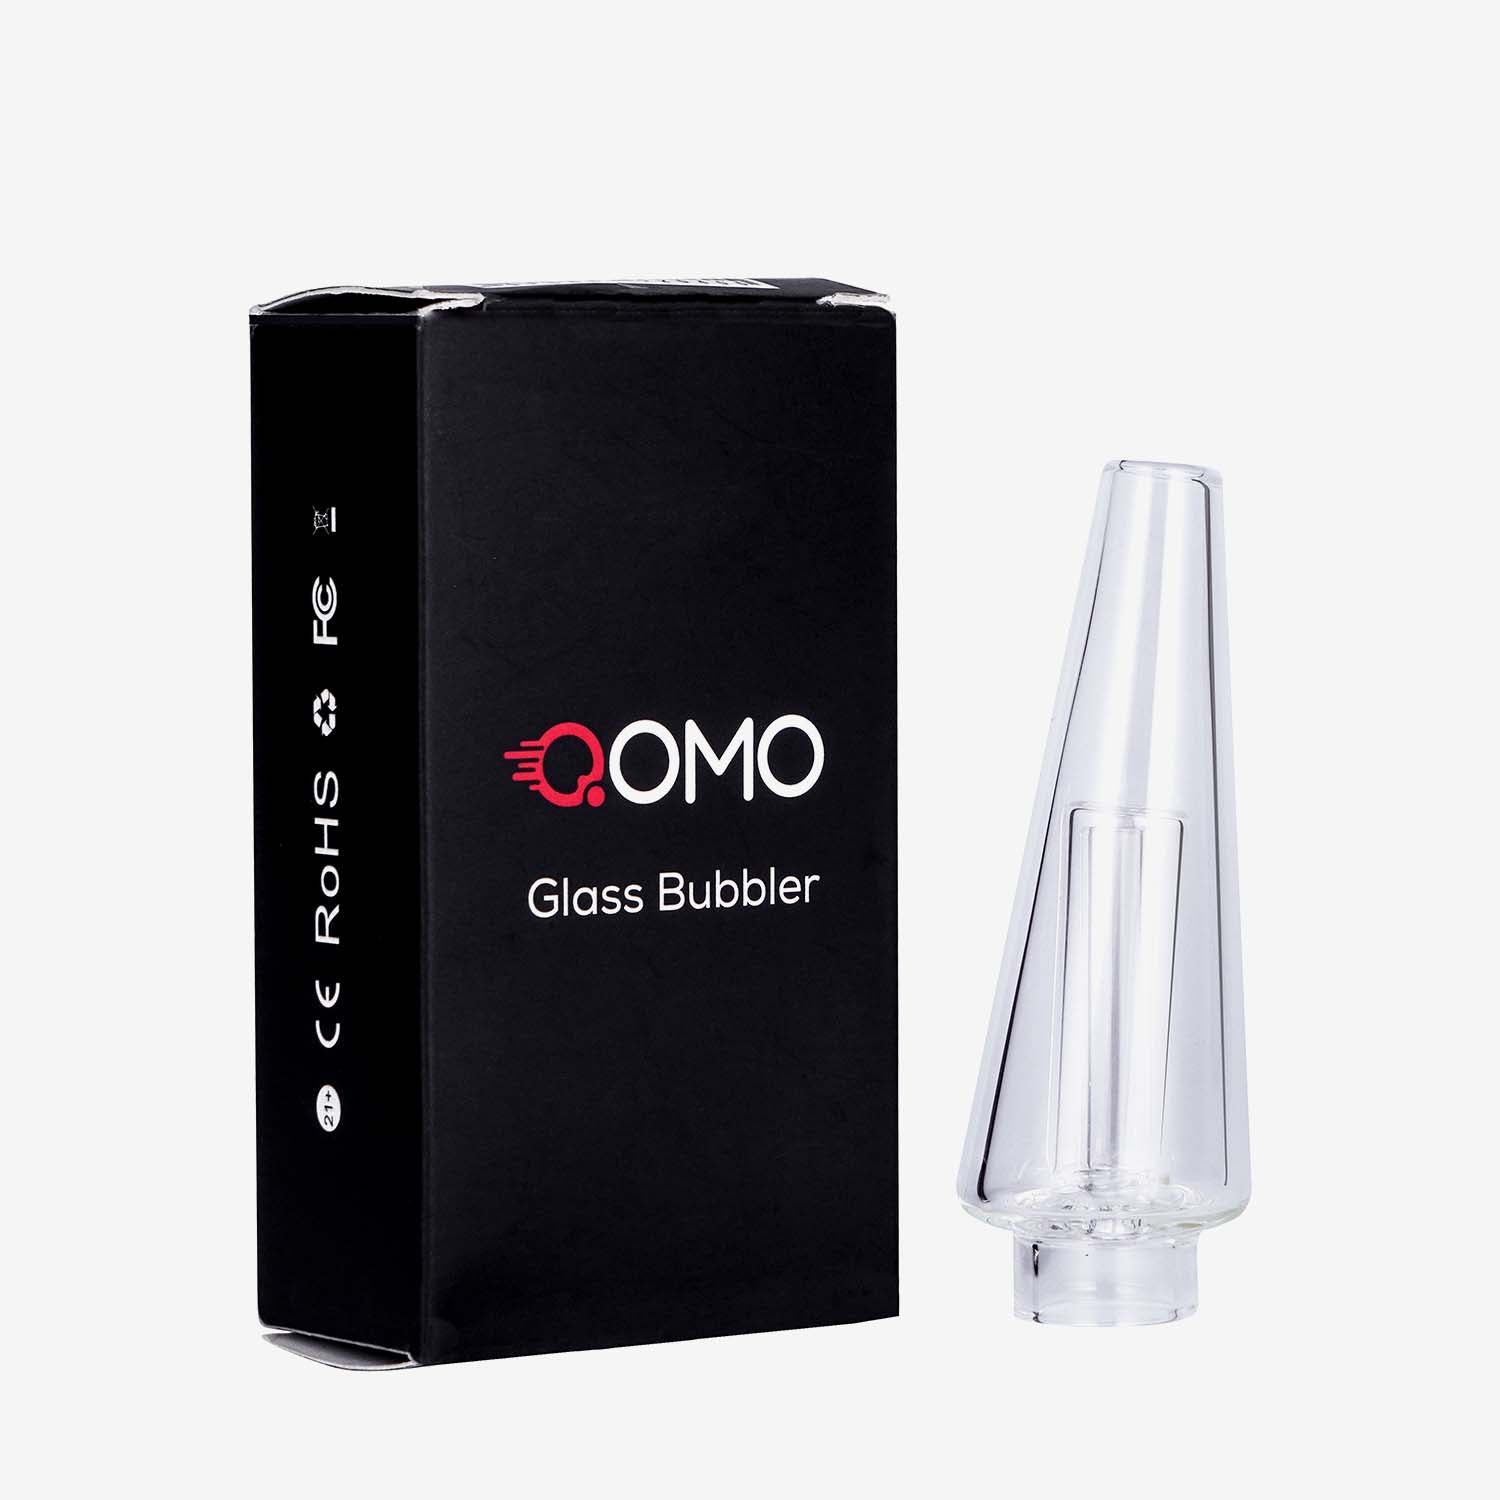 QOMO Glass Bubbler - INHALCO